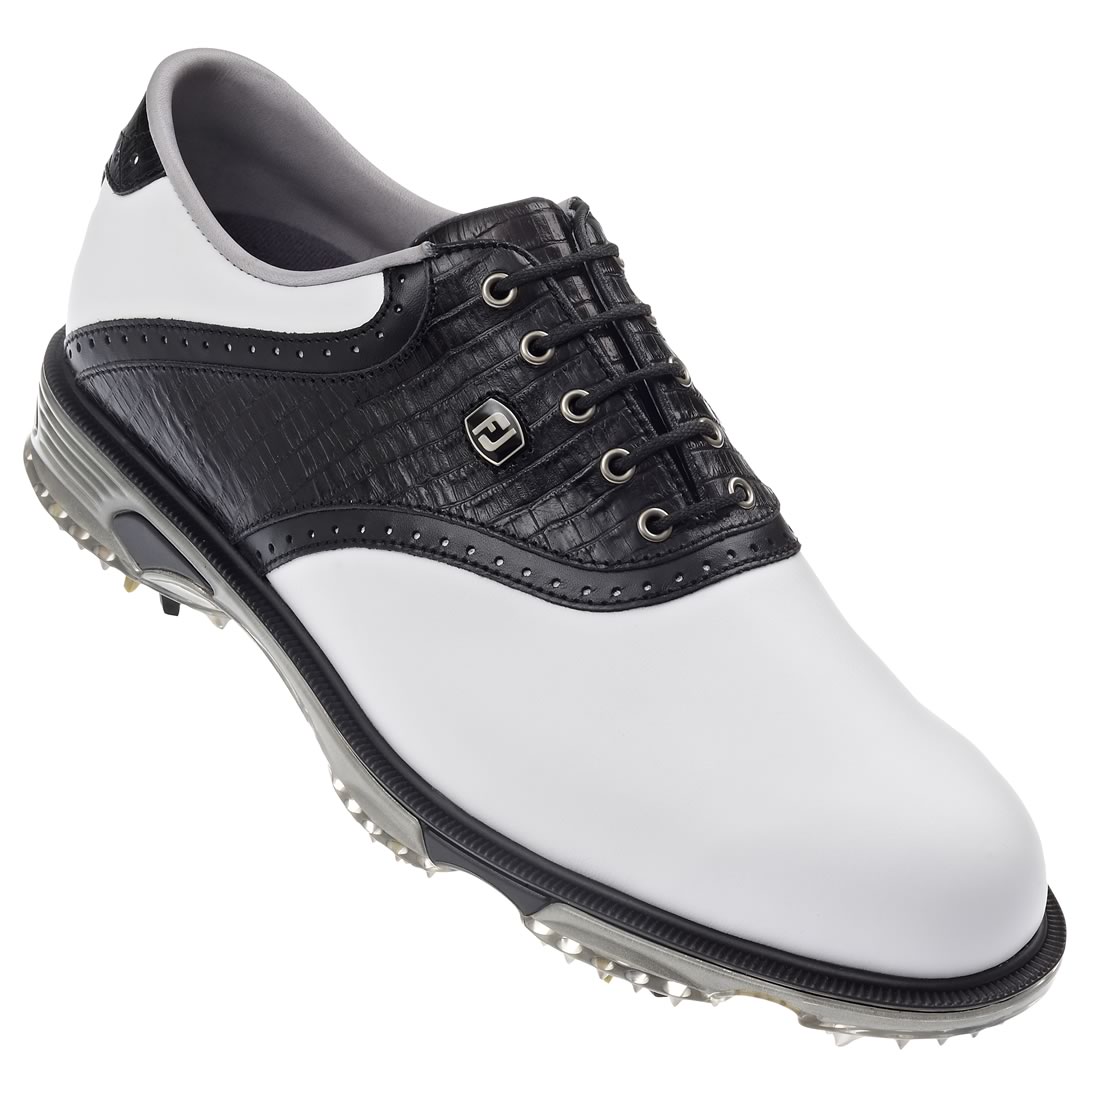 Dryjoys Tour Golf Shoes White/Black #53668